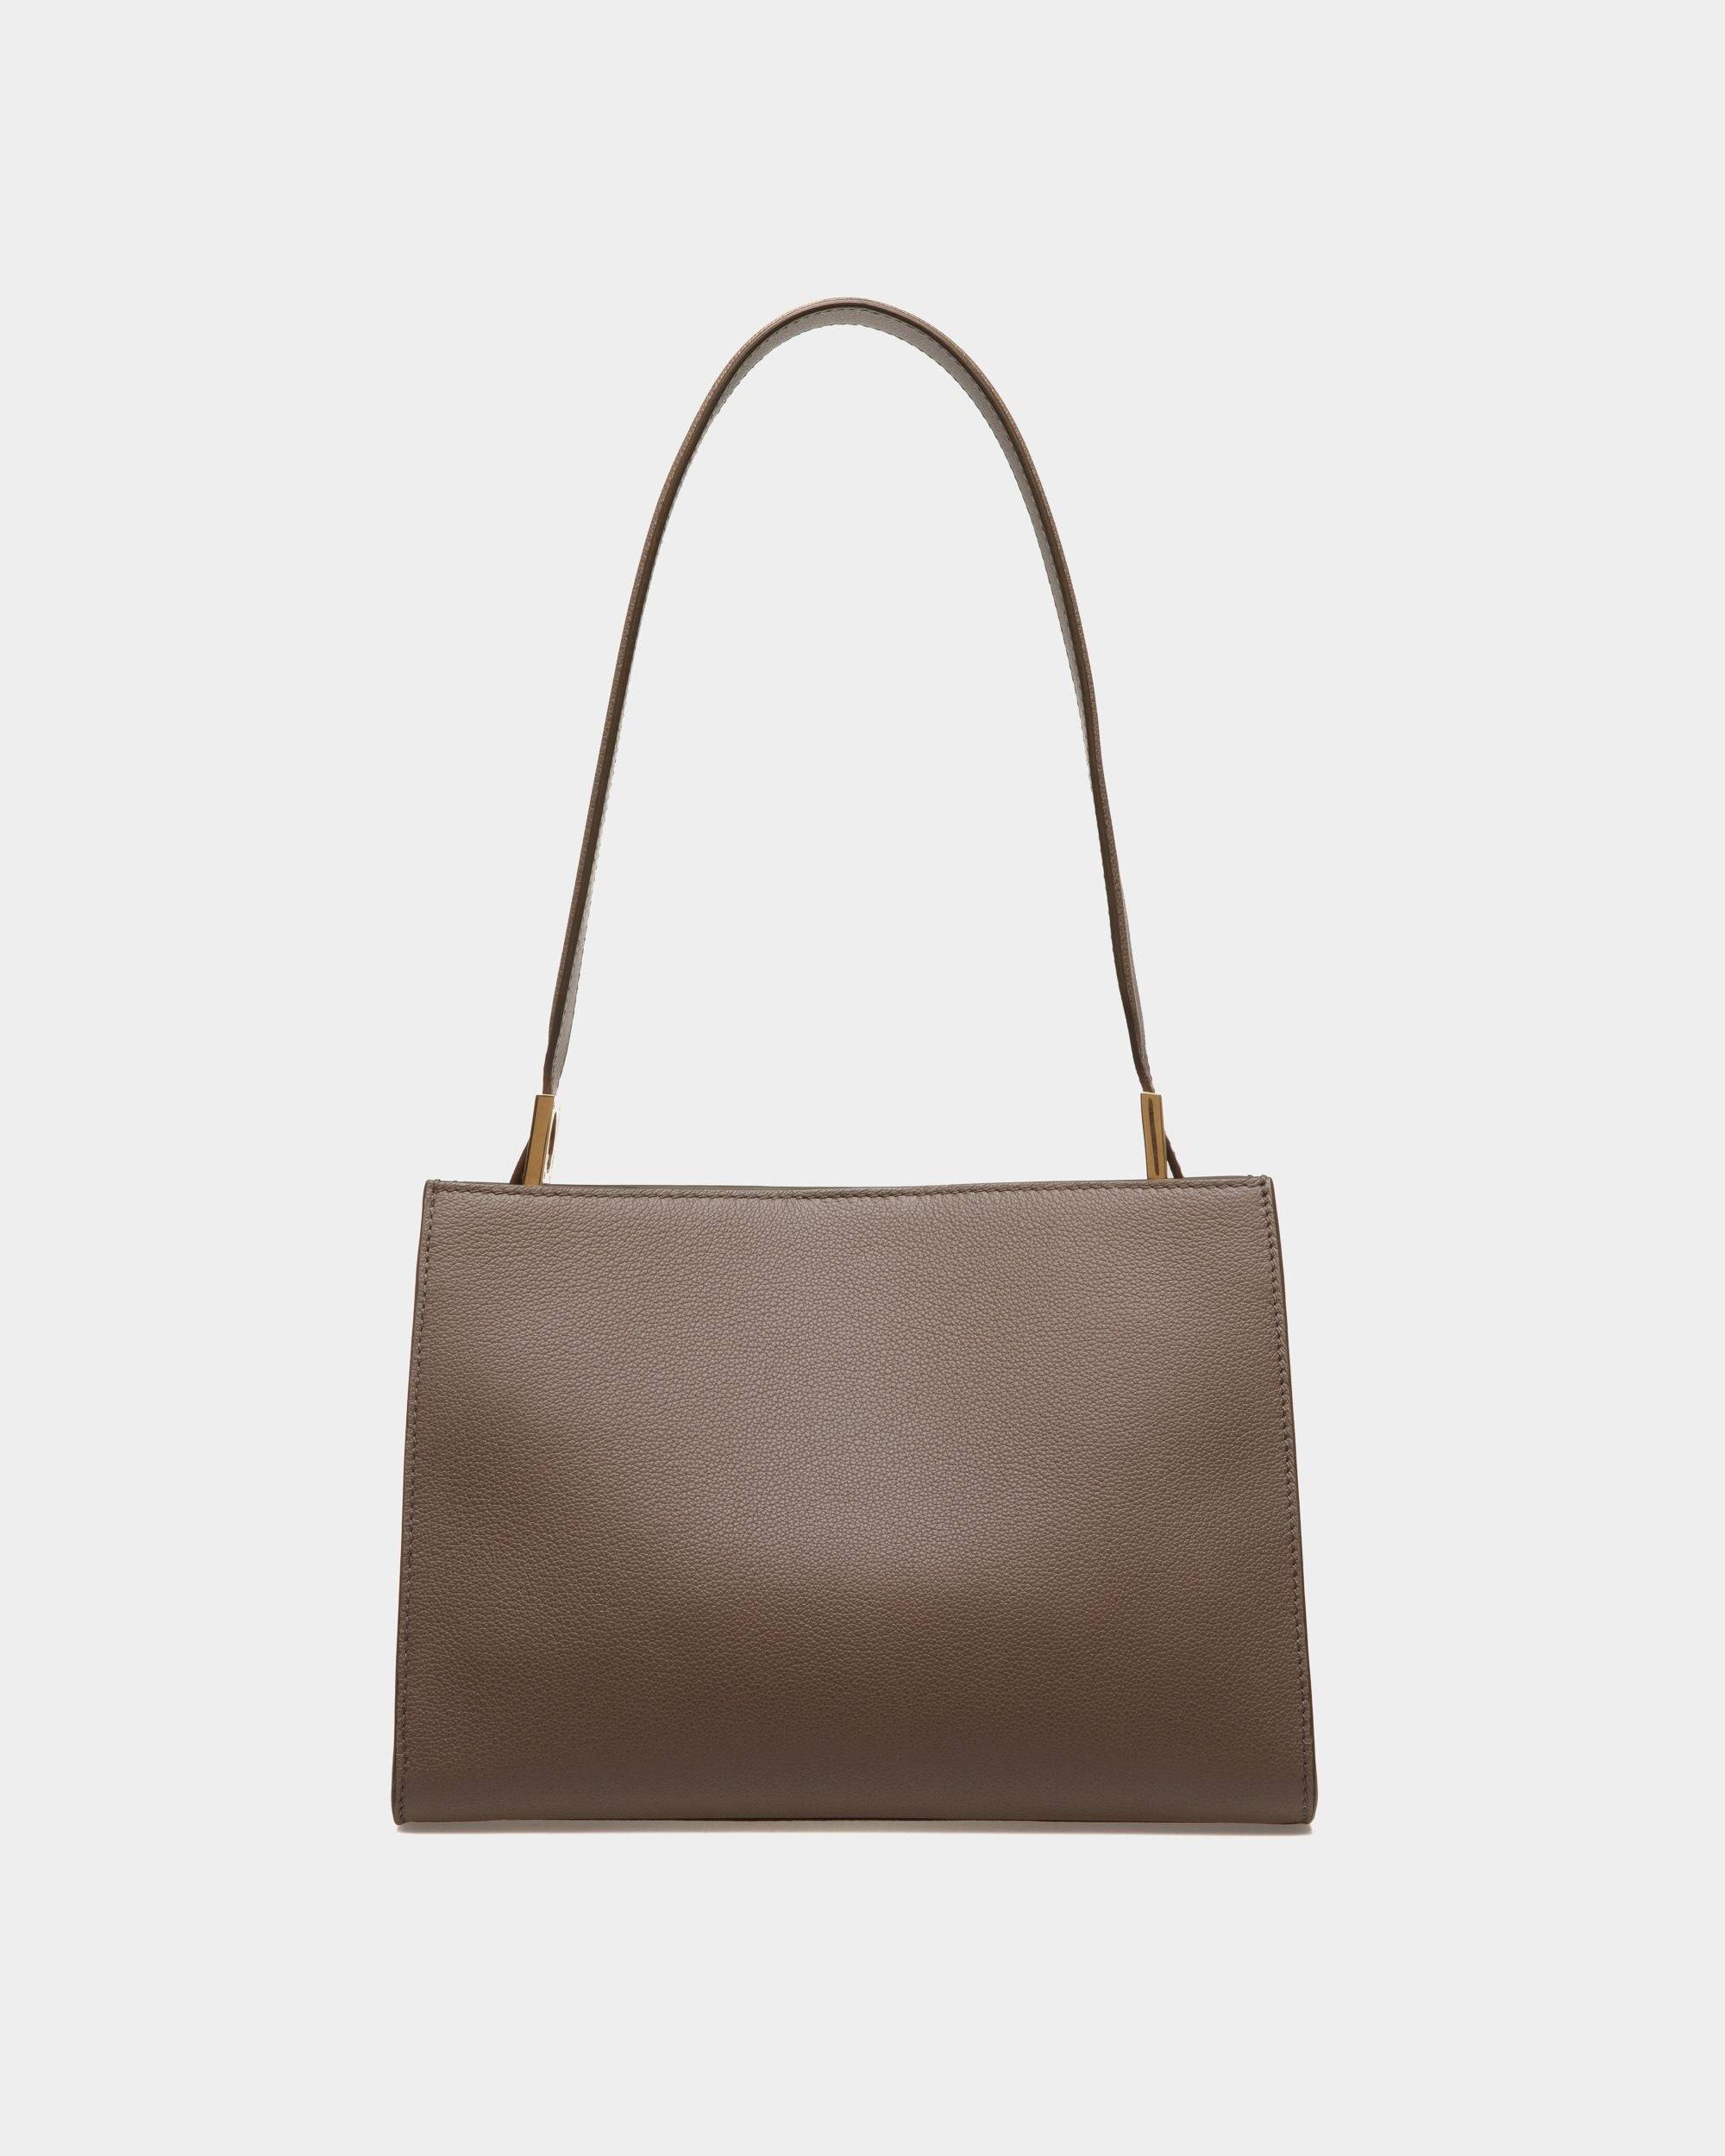 Emblem | Women's Shoulder Bag in Beige Grained Leather | Bally | Still Life Back